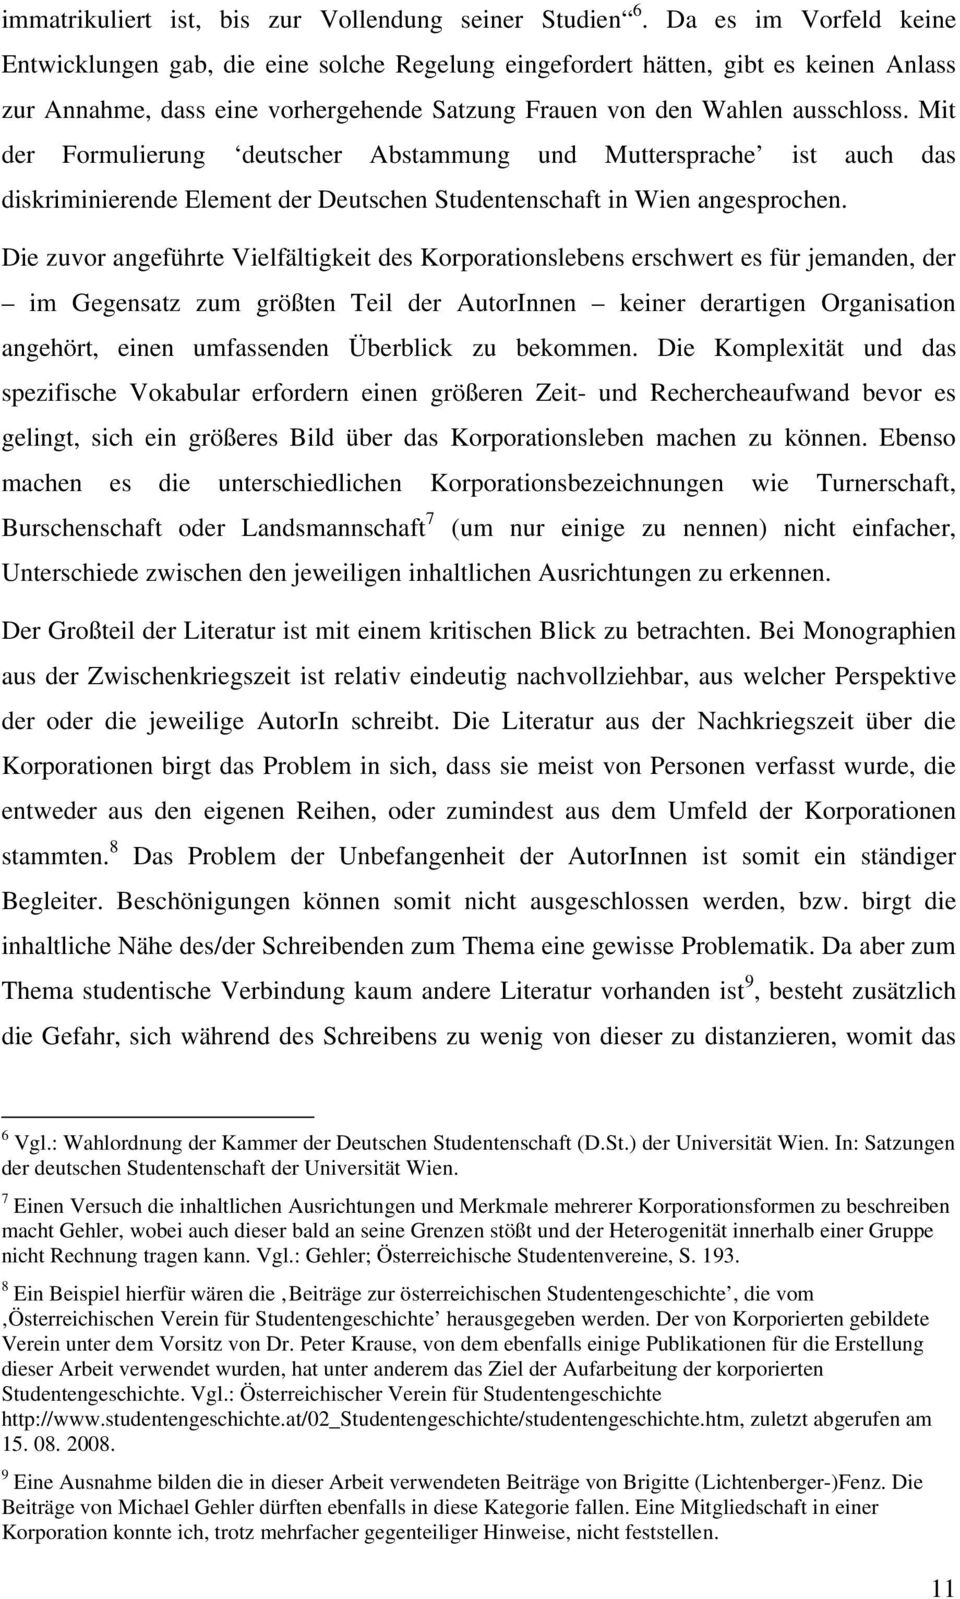 Mit der Formulierung deutscher Abstammung und Muttersprache ist auch das diskriminierende Element der Deutschen Studentenschaft in Wien angesprochen.